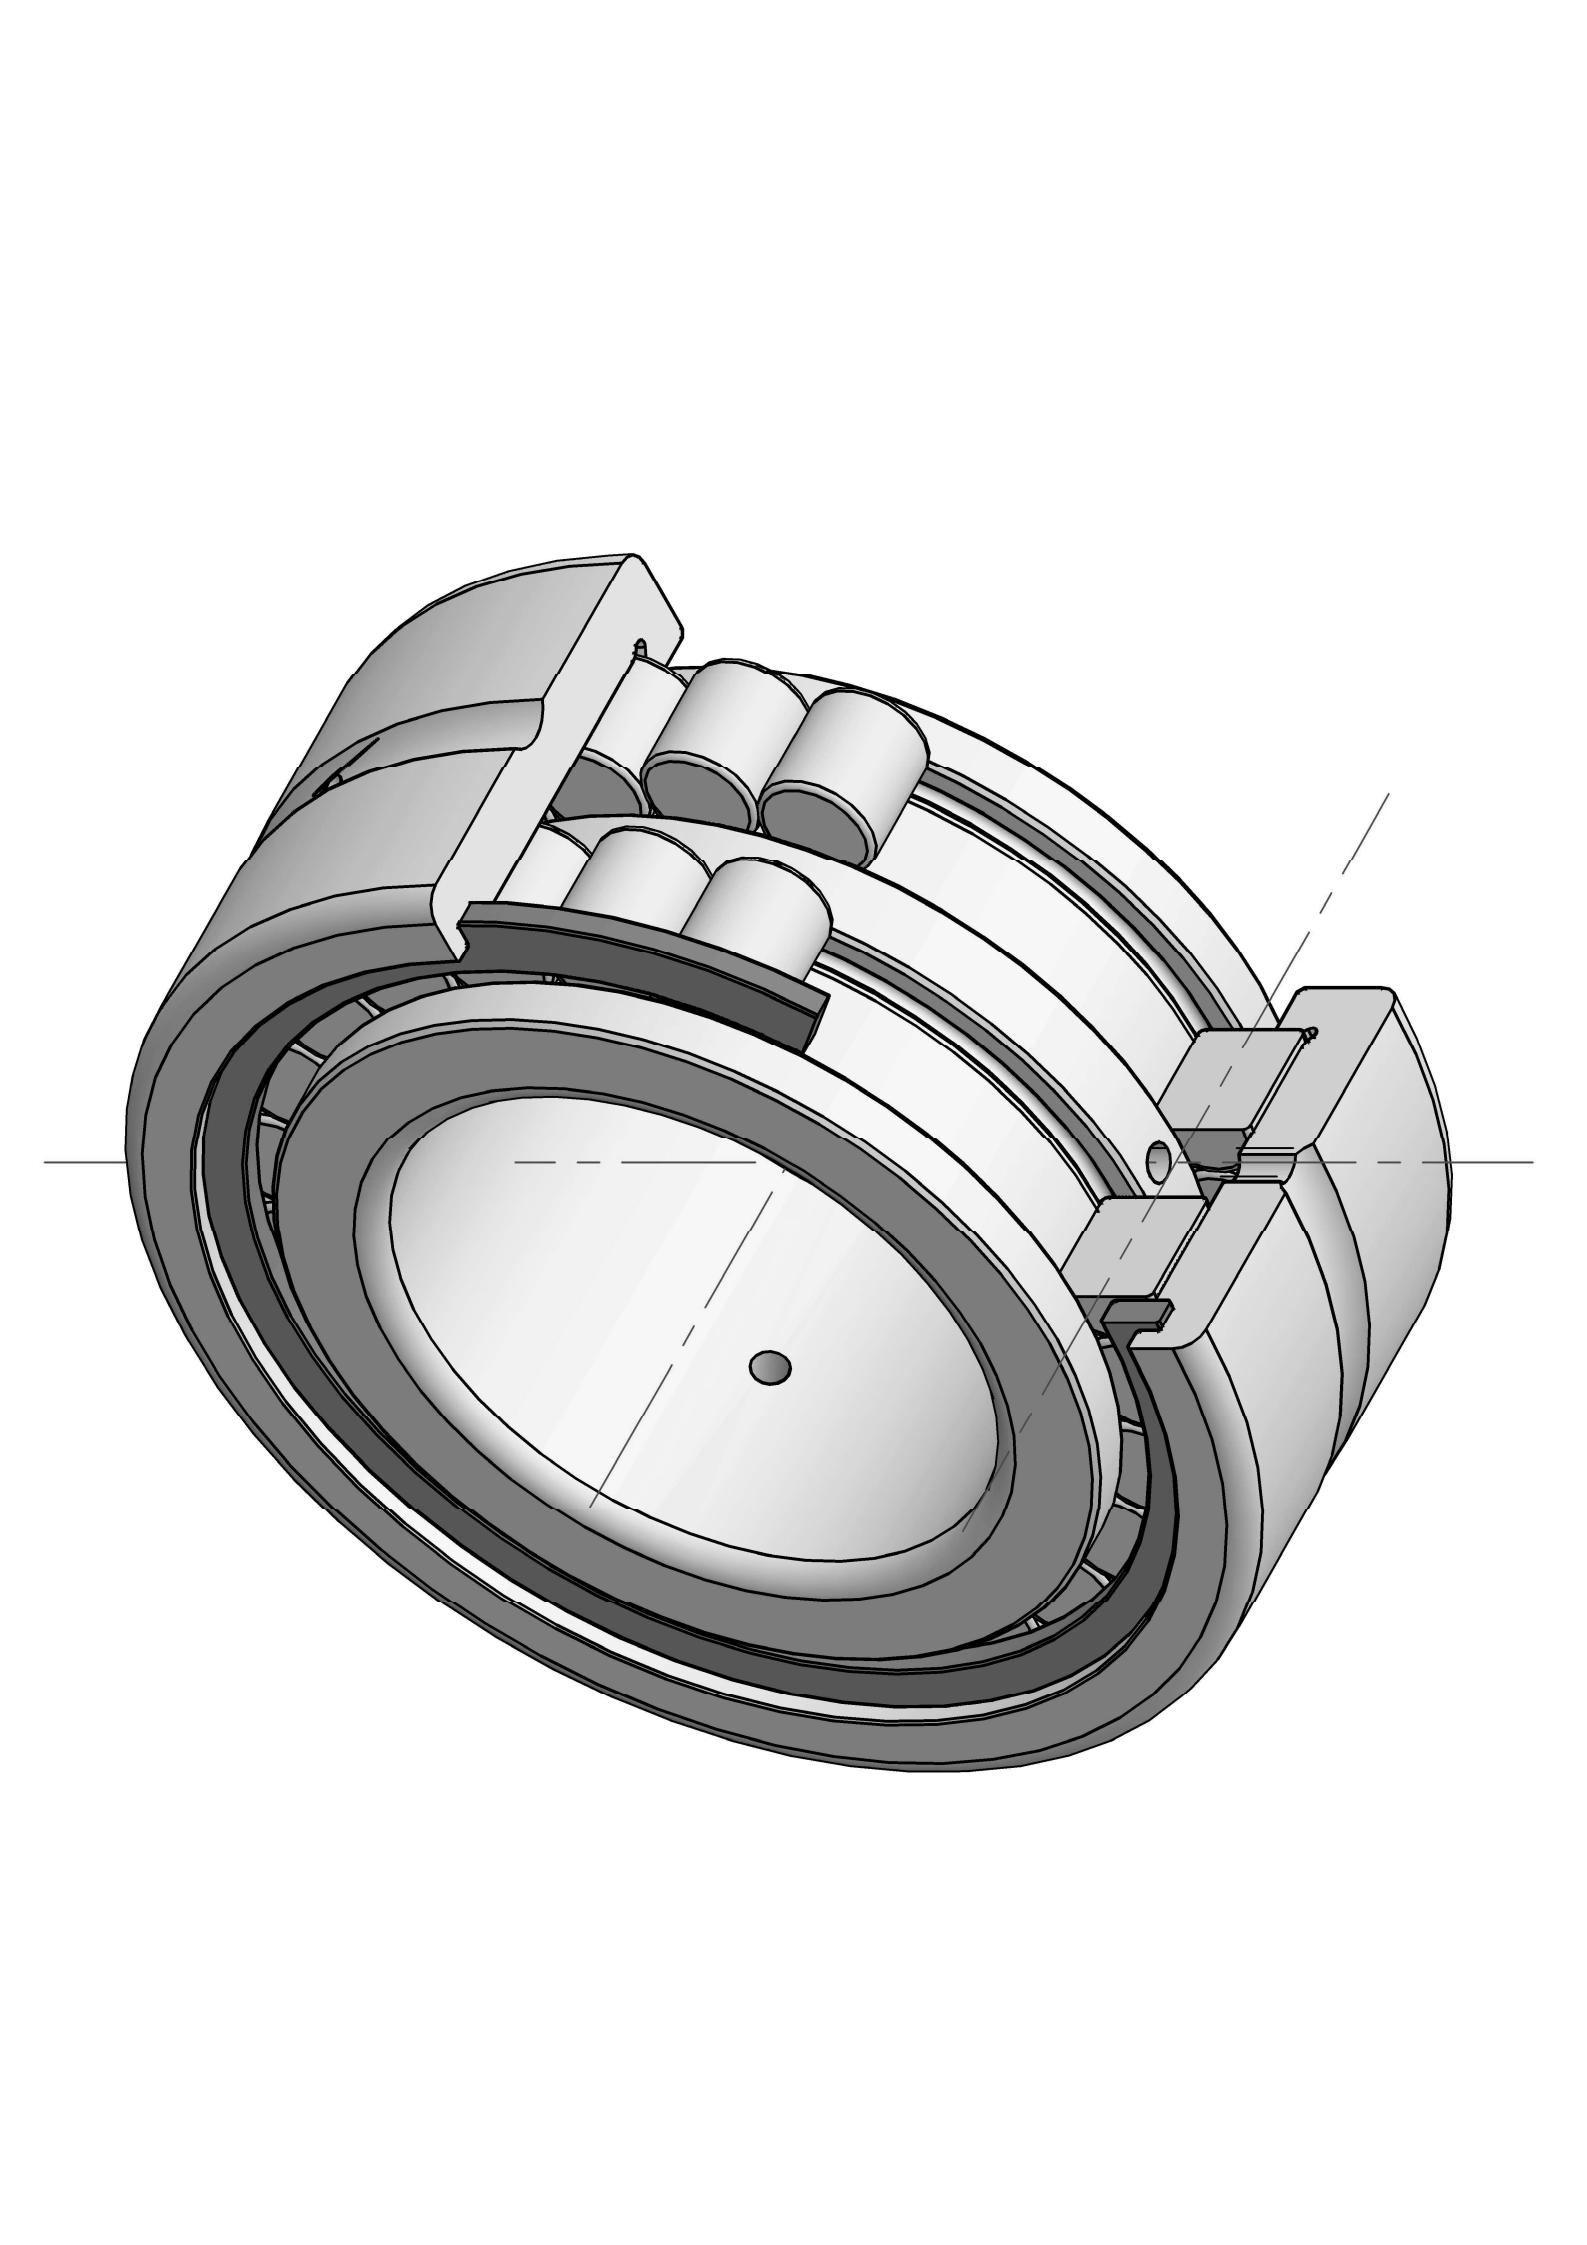 SL185011 Ob chav kab puv ntxiv cylindrical cov menyuam bearings